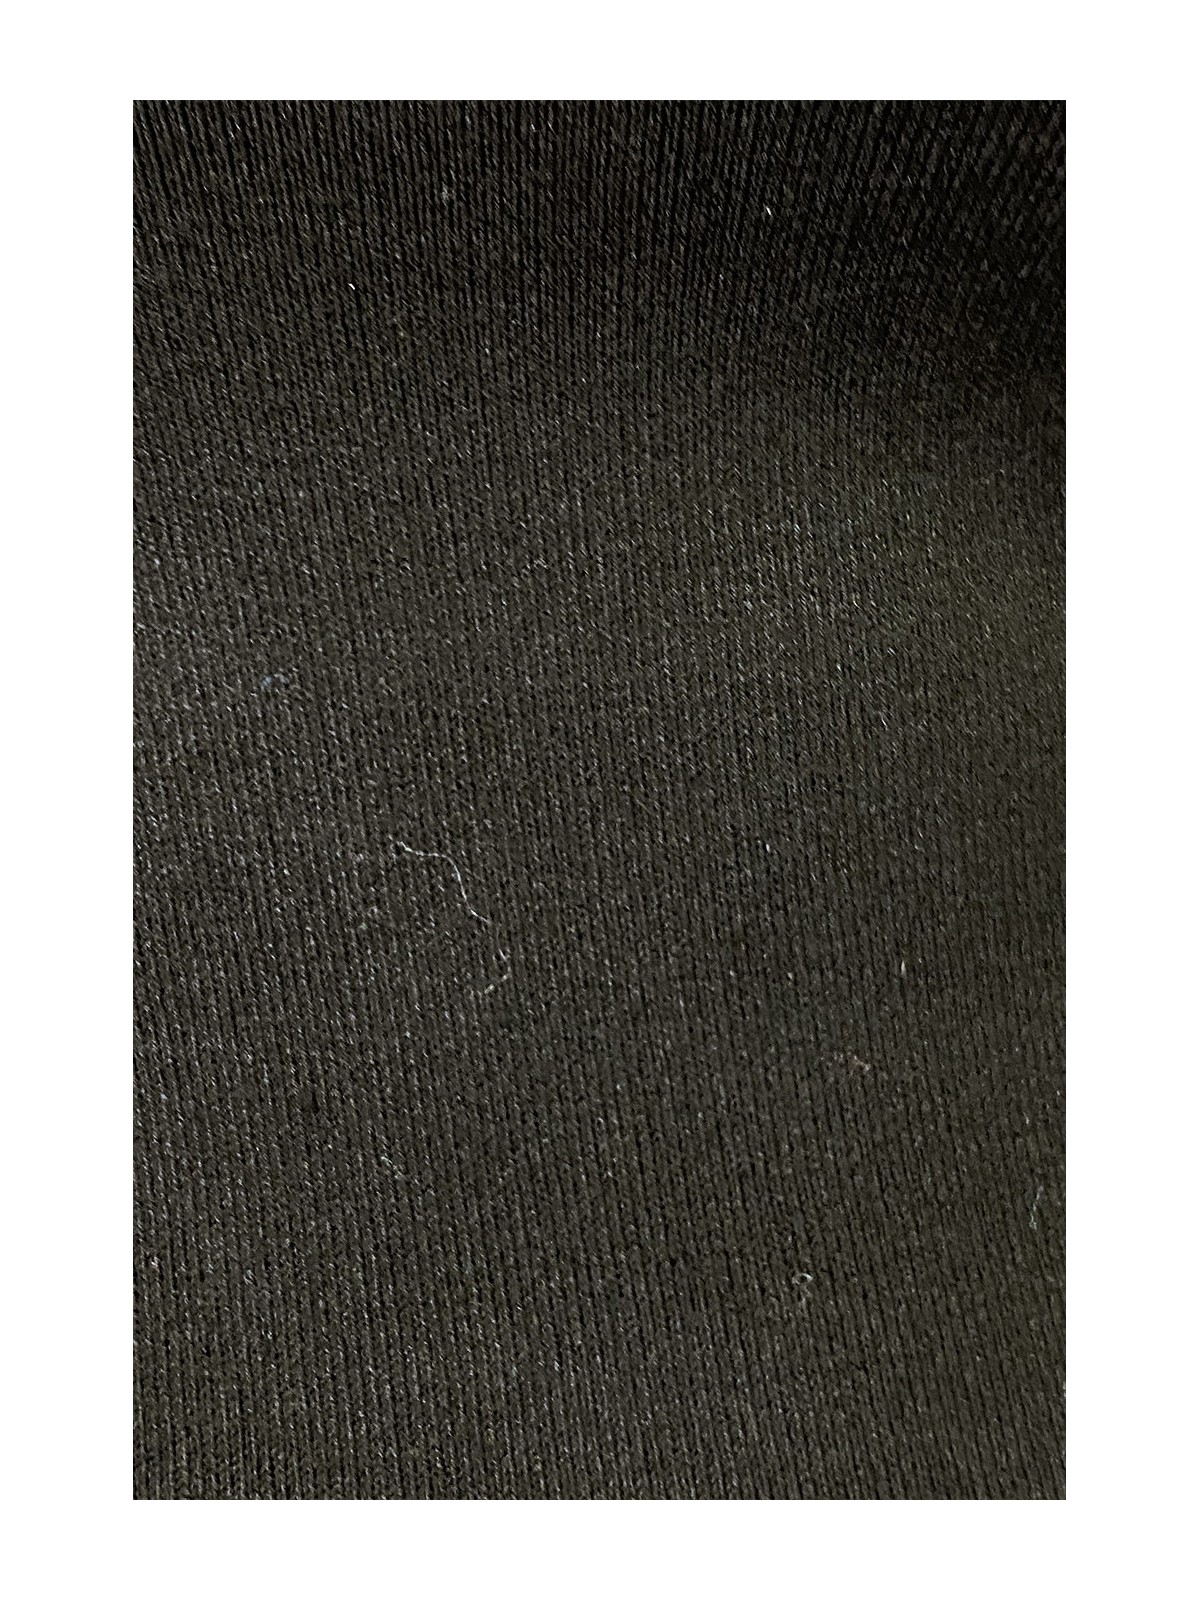 Pull noir col rond en maille tricot très extensible et très doux - 6